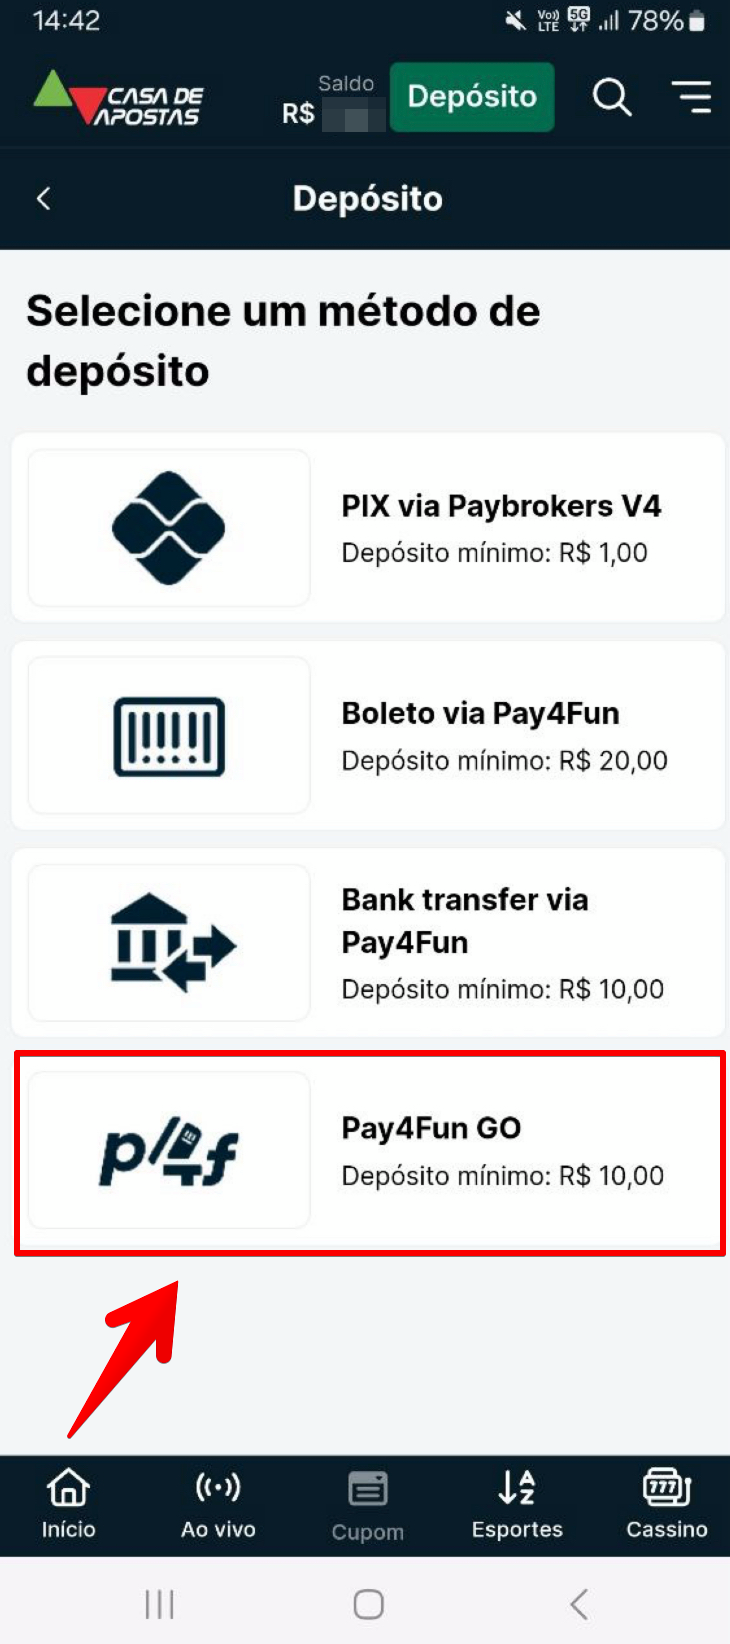 O pagamento via Pay4Fun Go.